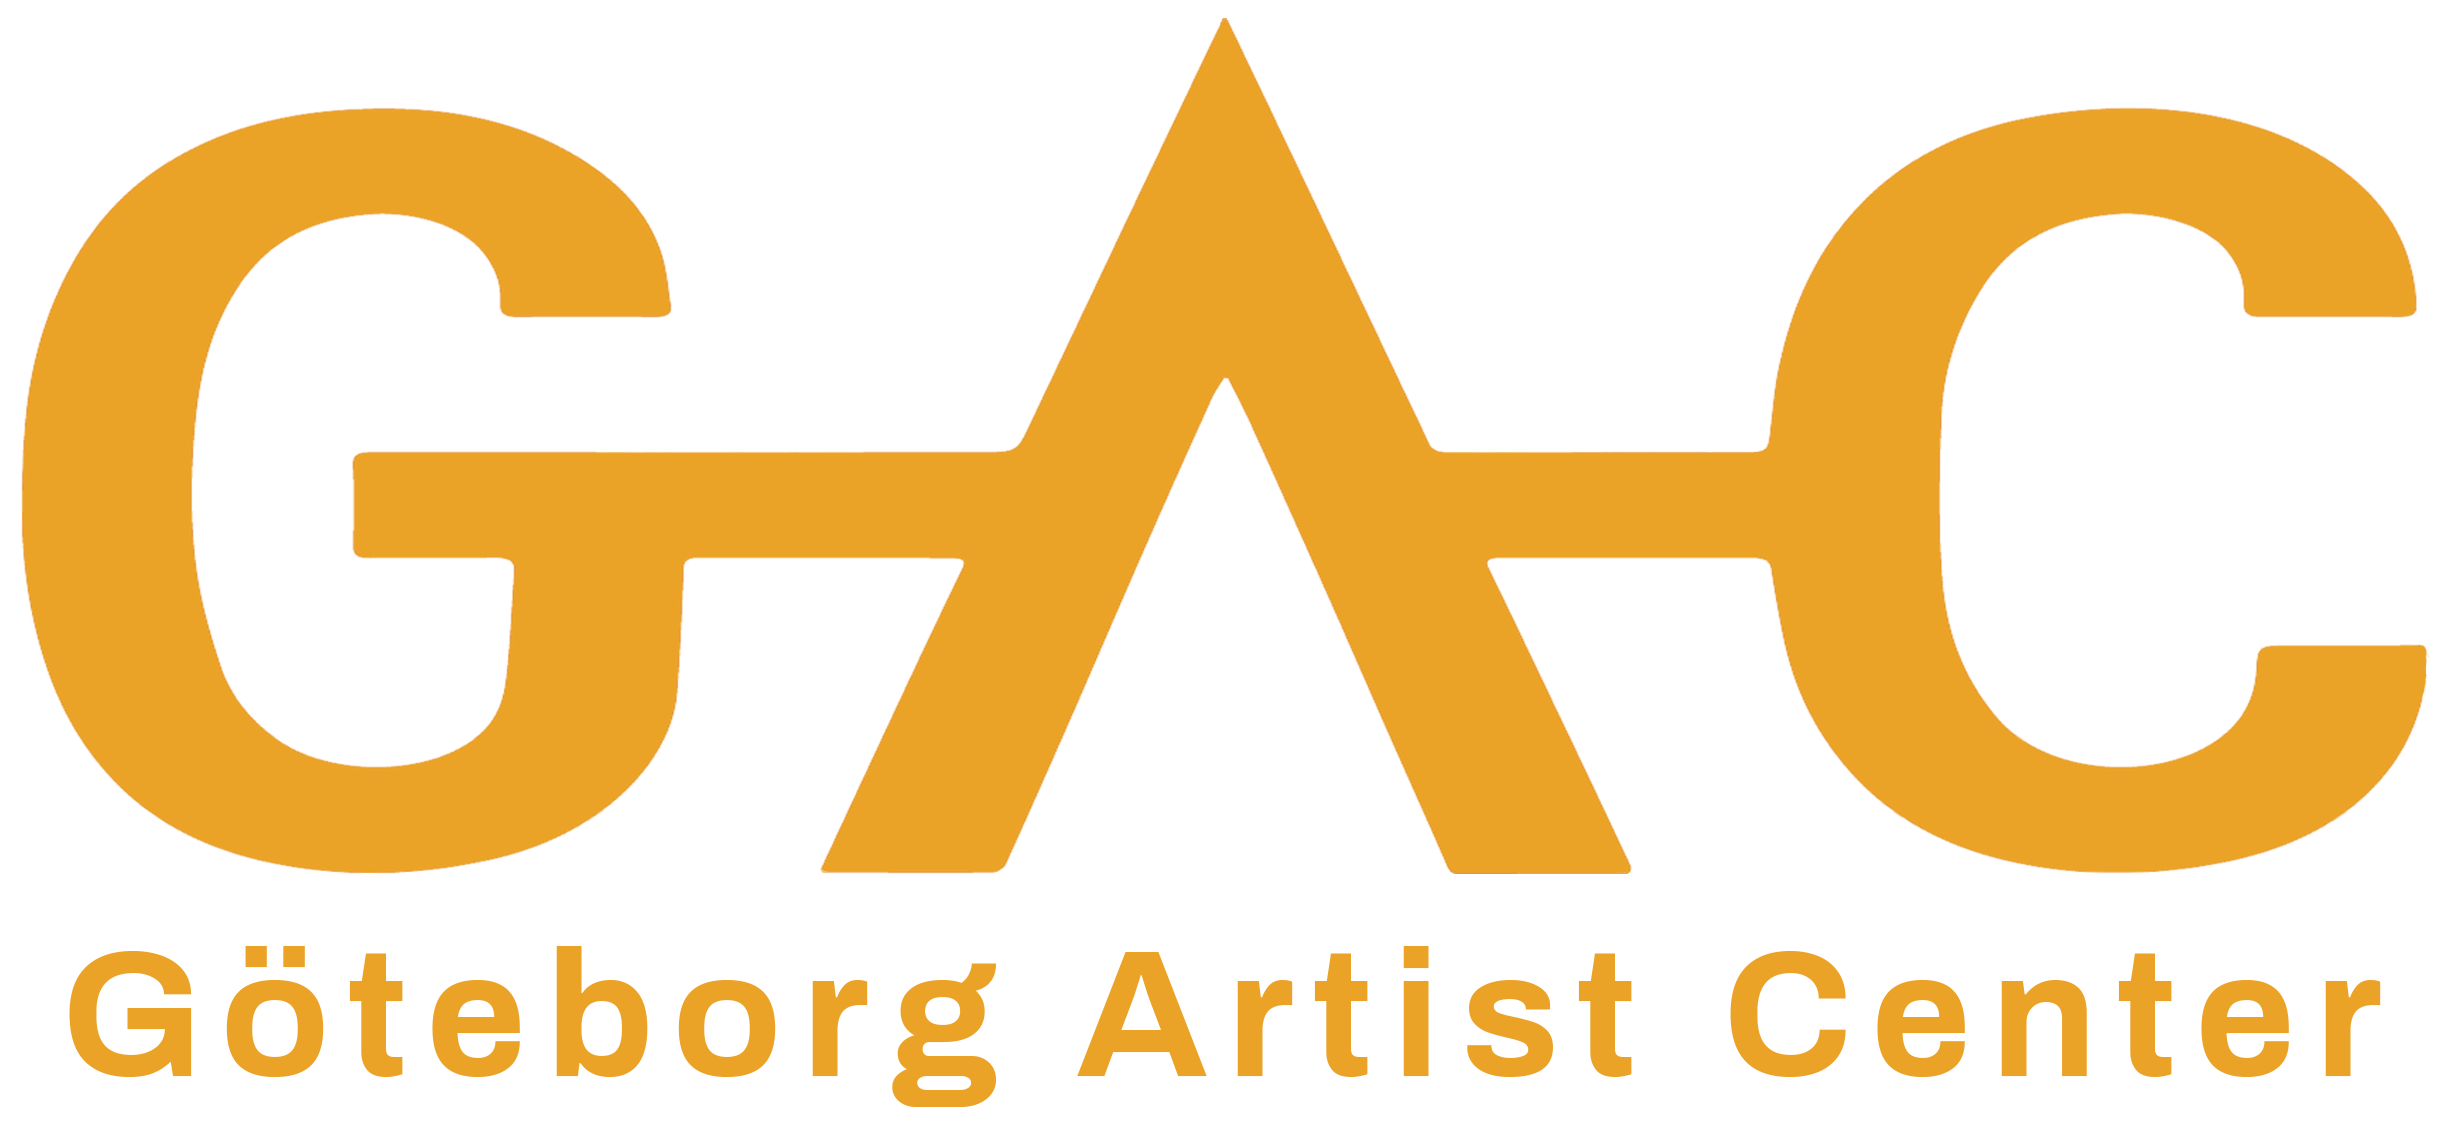 GAC - Göteborg Artist Community 